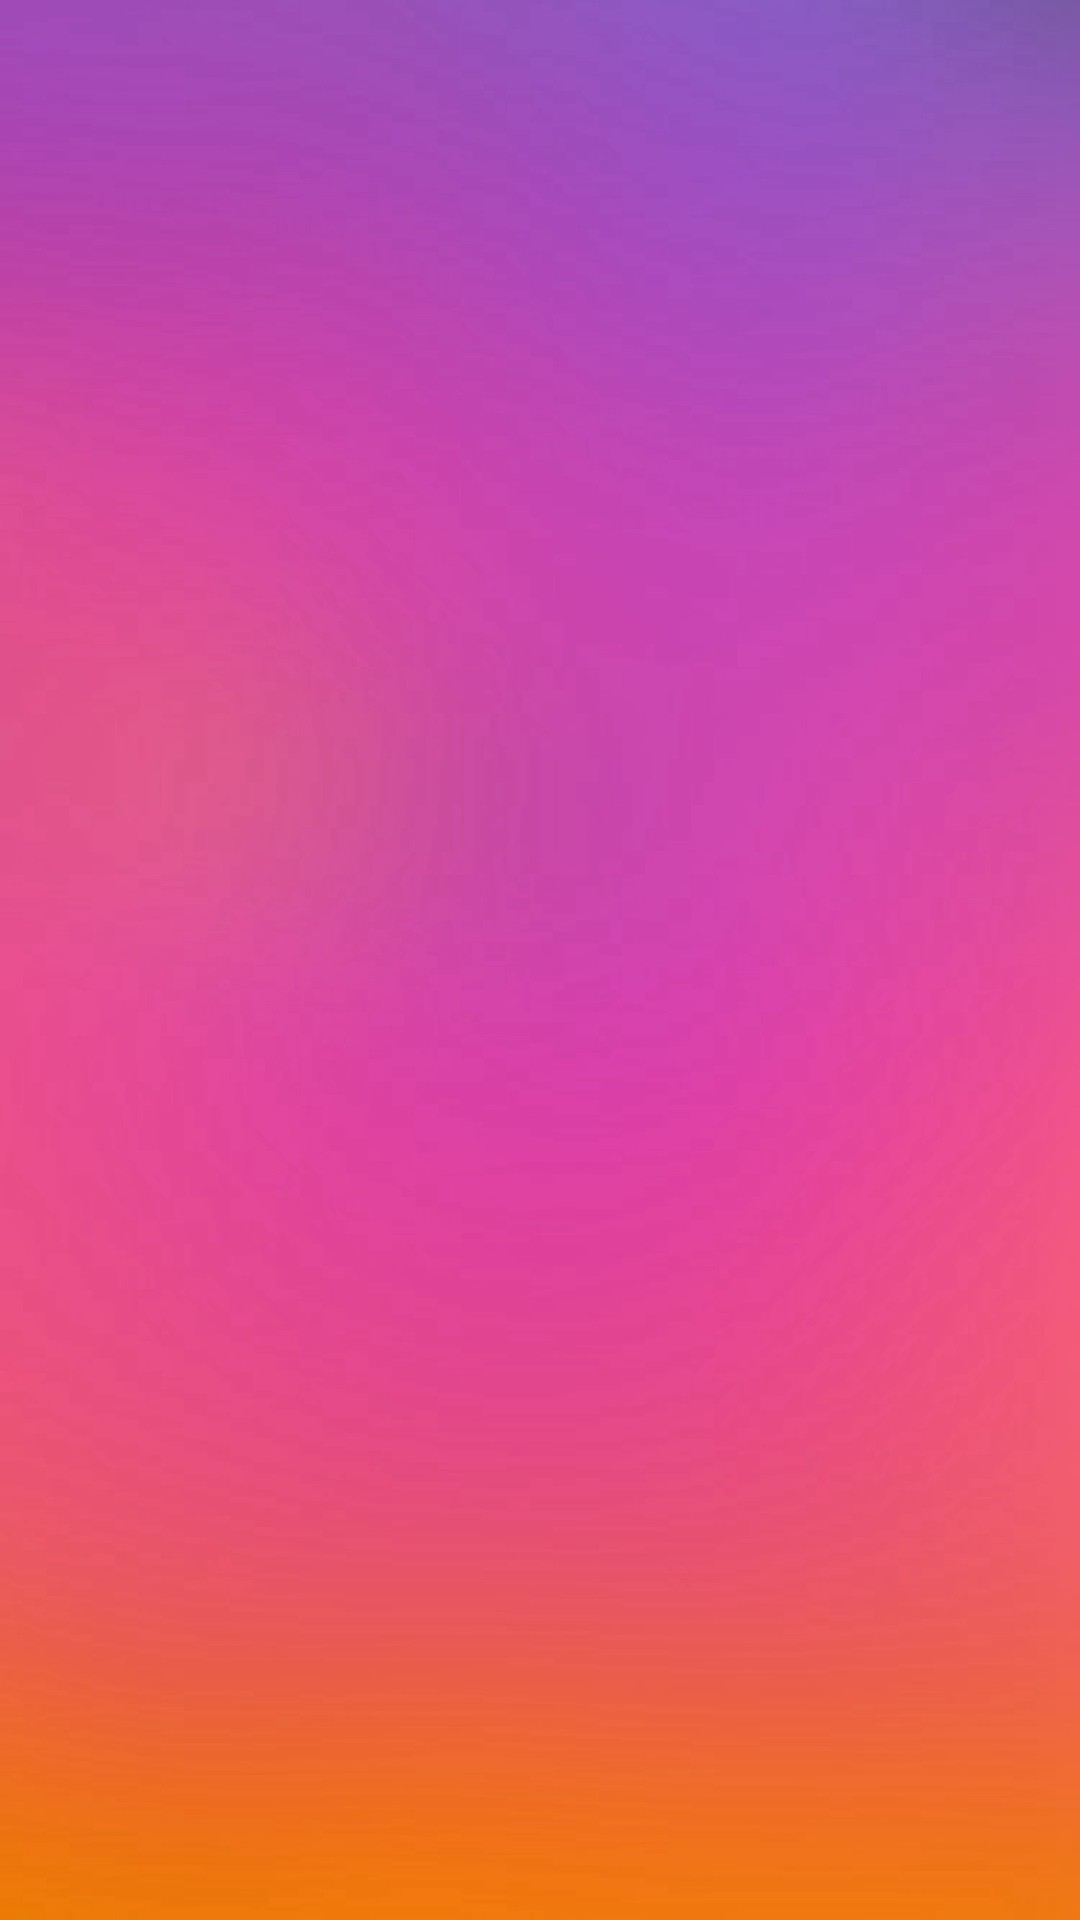 Hình nền iPhone 6 màu đỏ tím nóng sẽ khiến cho màn hình iPhone của bạn trở nên đầy nét cuốn hút và đậm chất cá tính. Với sự kết hợp độc đáo của hai màu sắc nóng bỏng, hình nền này sẽ giúp bạn thể hiện được phong cách riêng của mình.